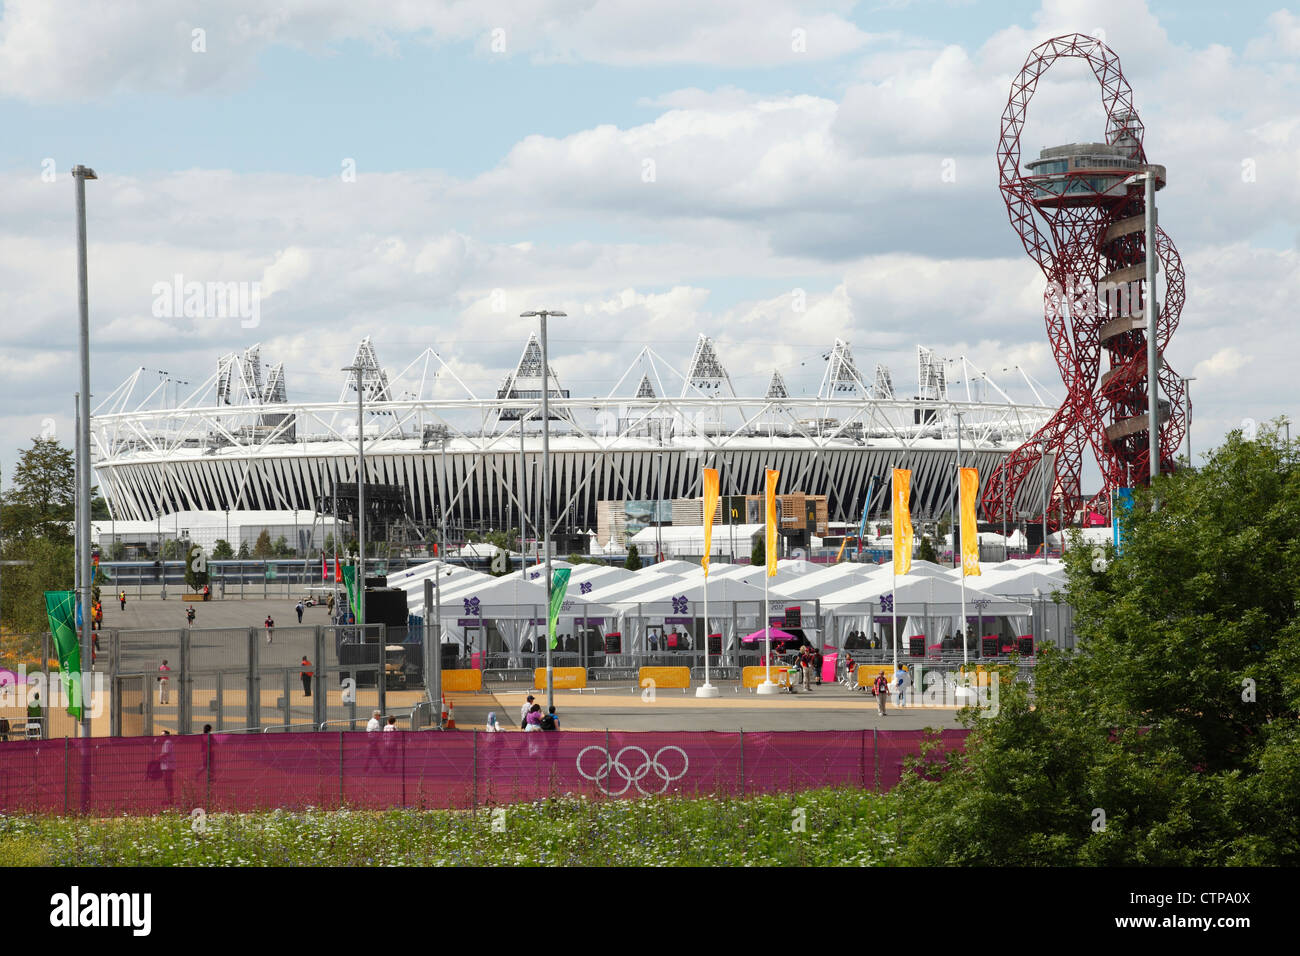 Le stade olympique de Londres 2012 à Stratford, Londres, Angleterre, Royaume-Uni Banque D'Images